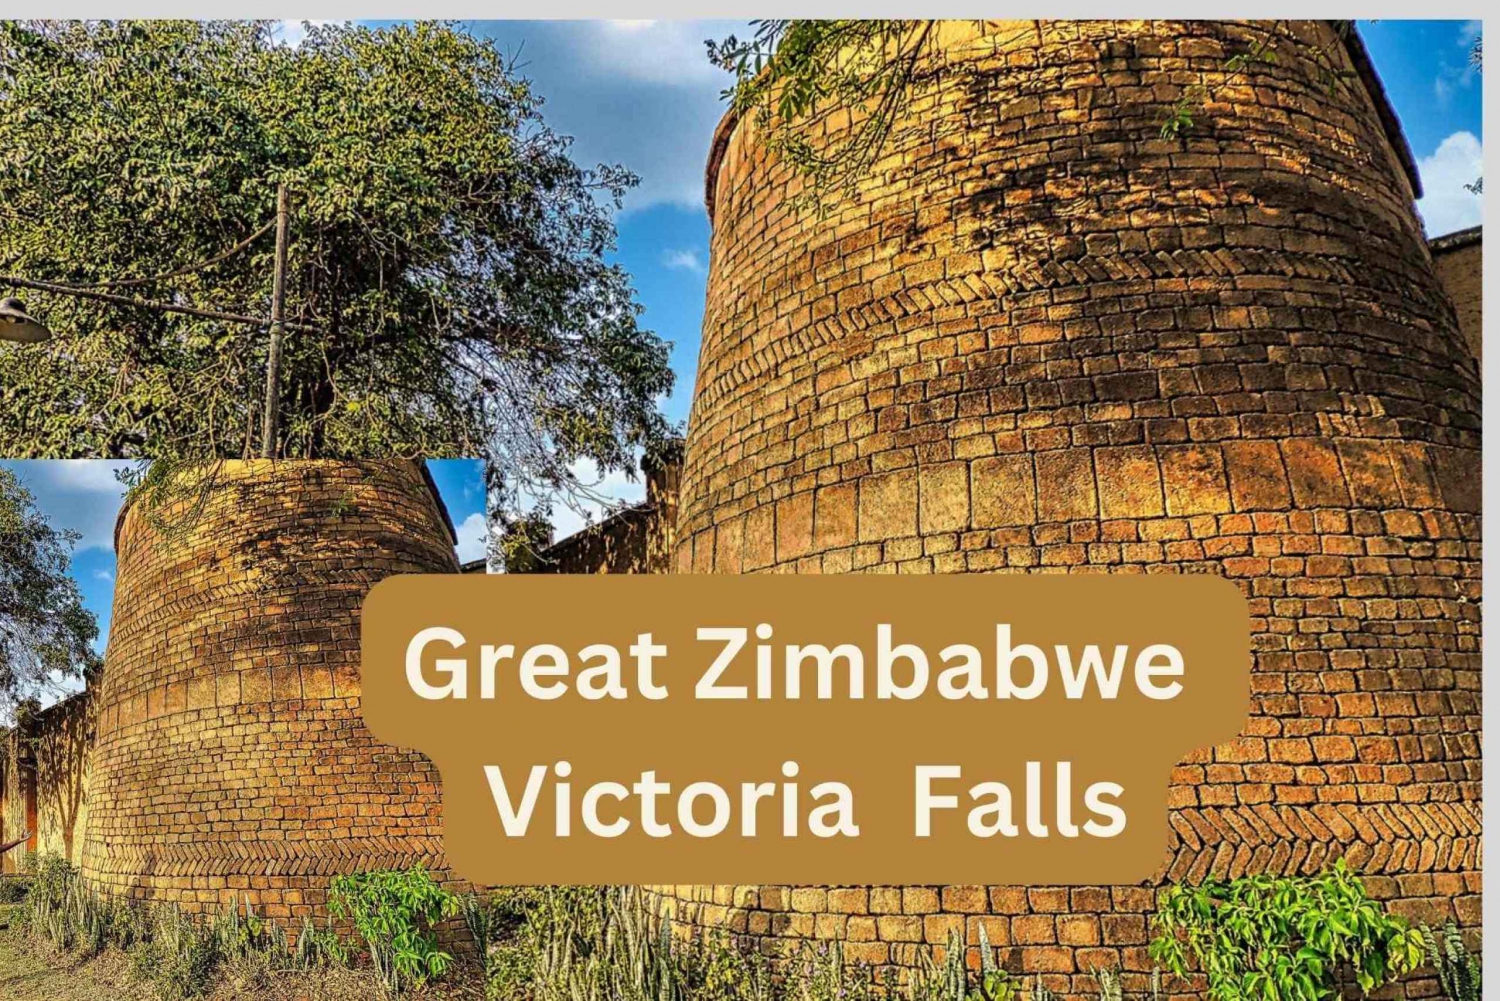 Cidade de Victoria Falls: Safári guiado na cidade